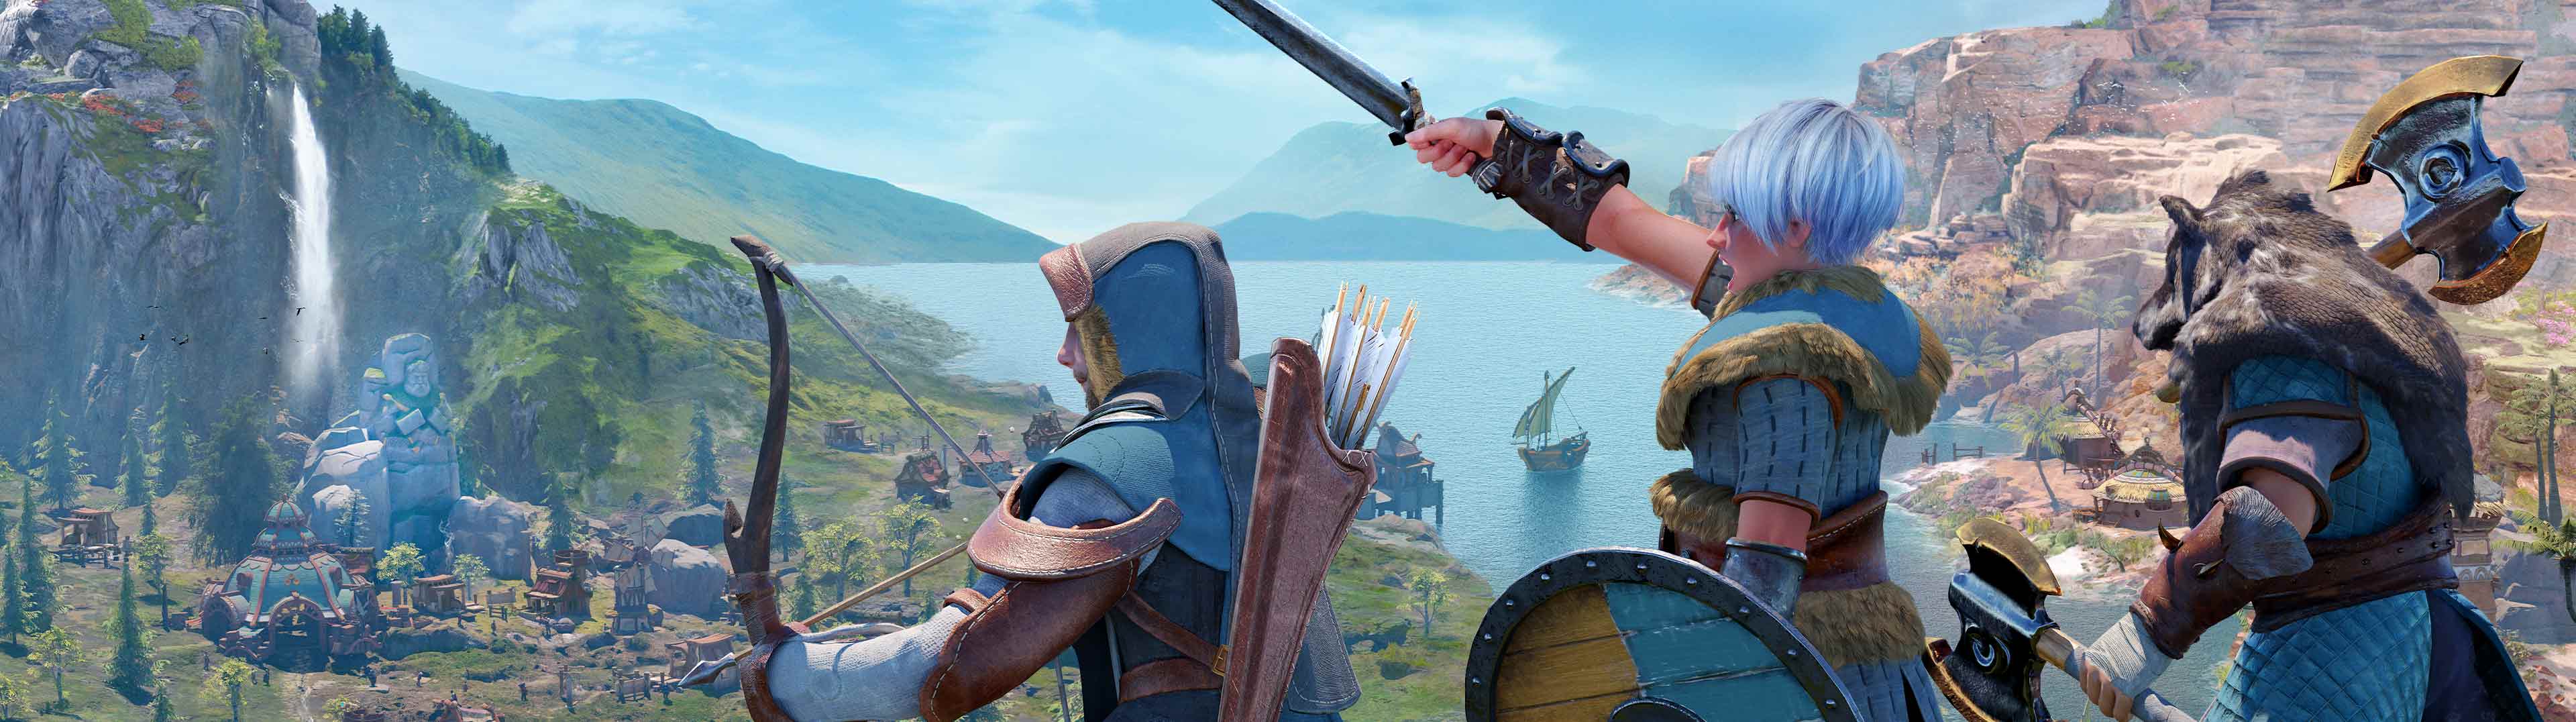 Dragons Dawn of New Riders chega em fevereiro ao PS4; veja gameplay